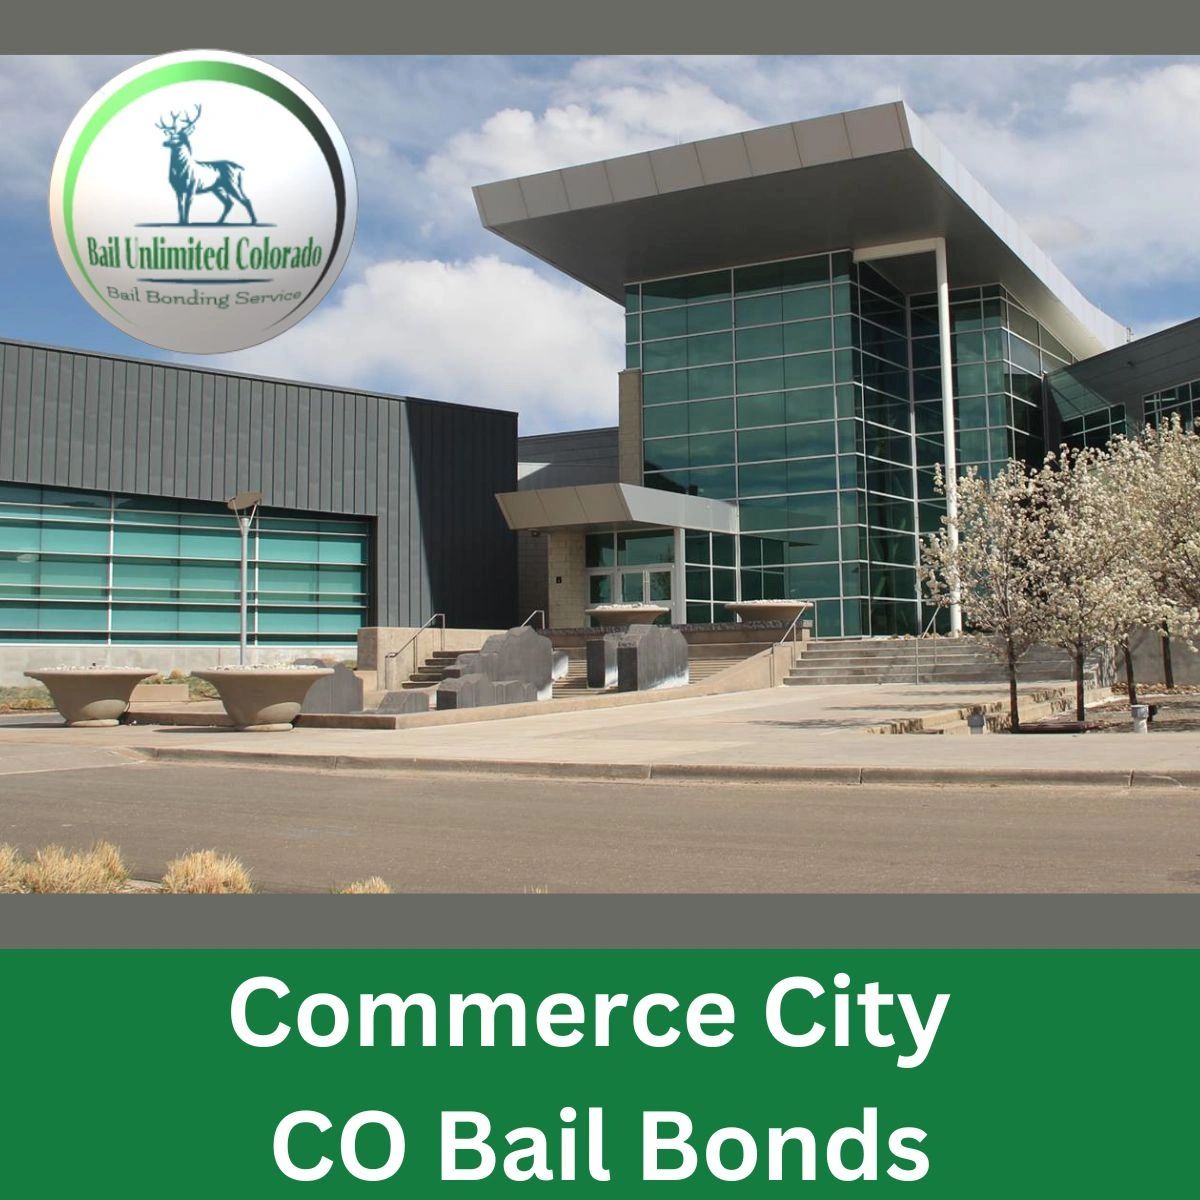 Commerce City CO Bail Bonds LOGO Bail Unlimited Colorado IMAGE Commerce City 39.80831, -104.93386